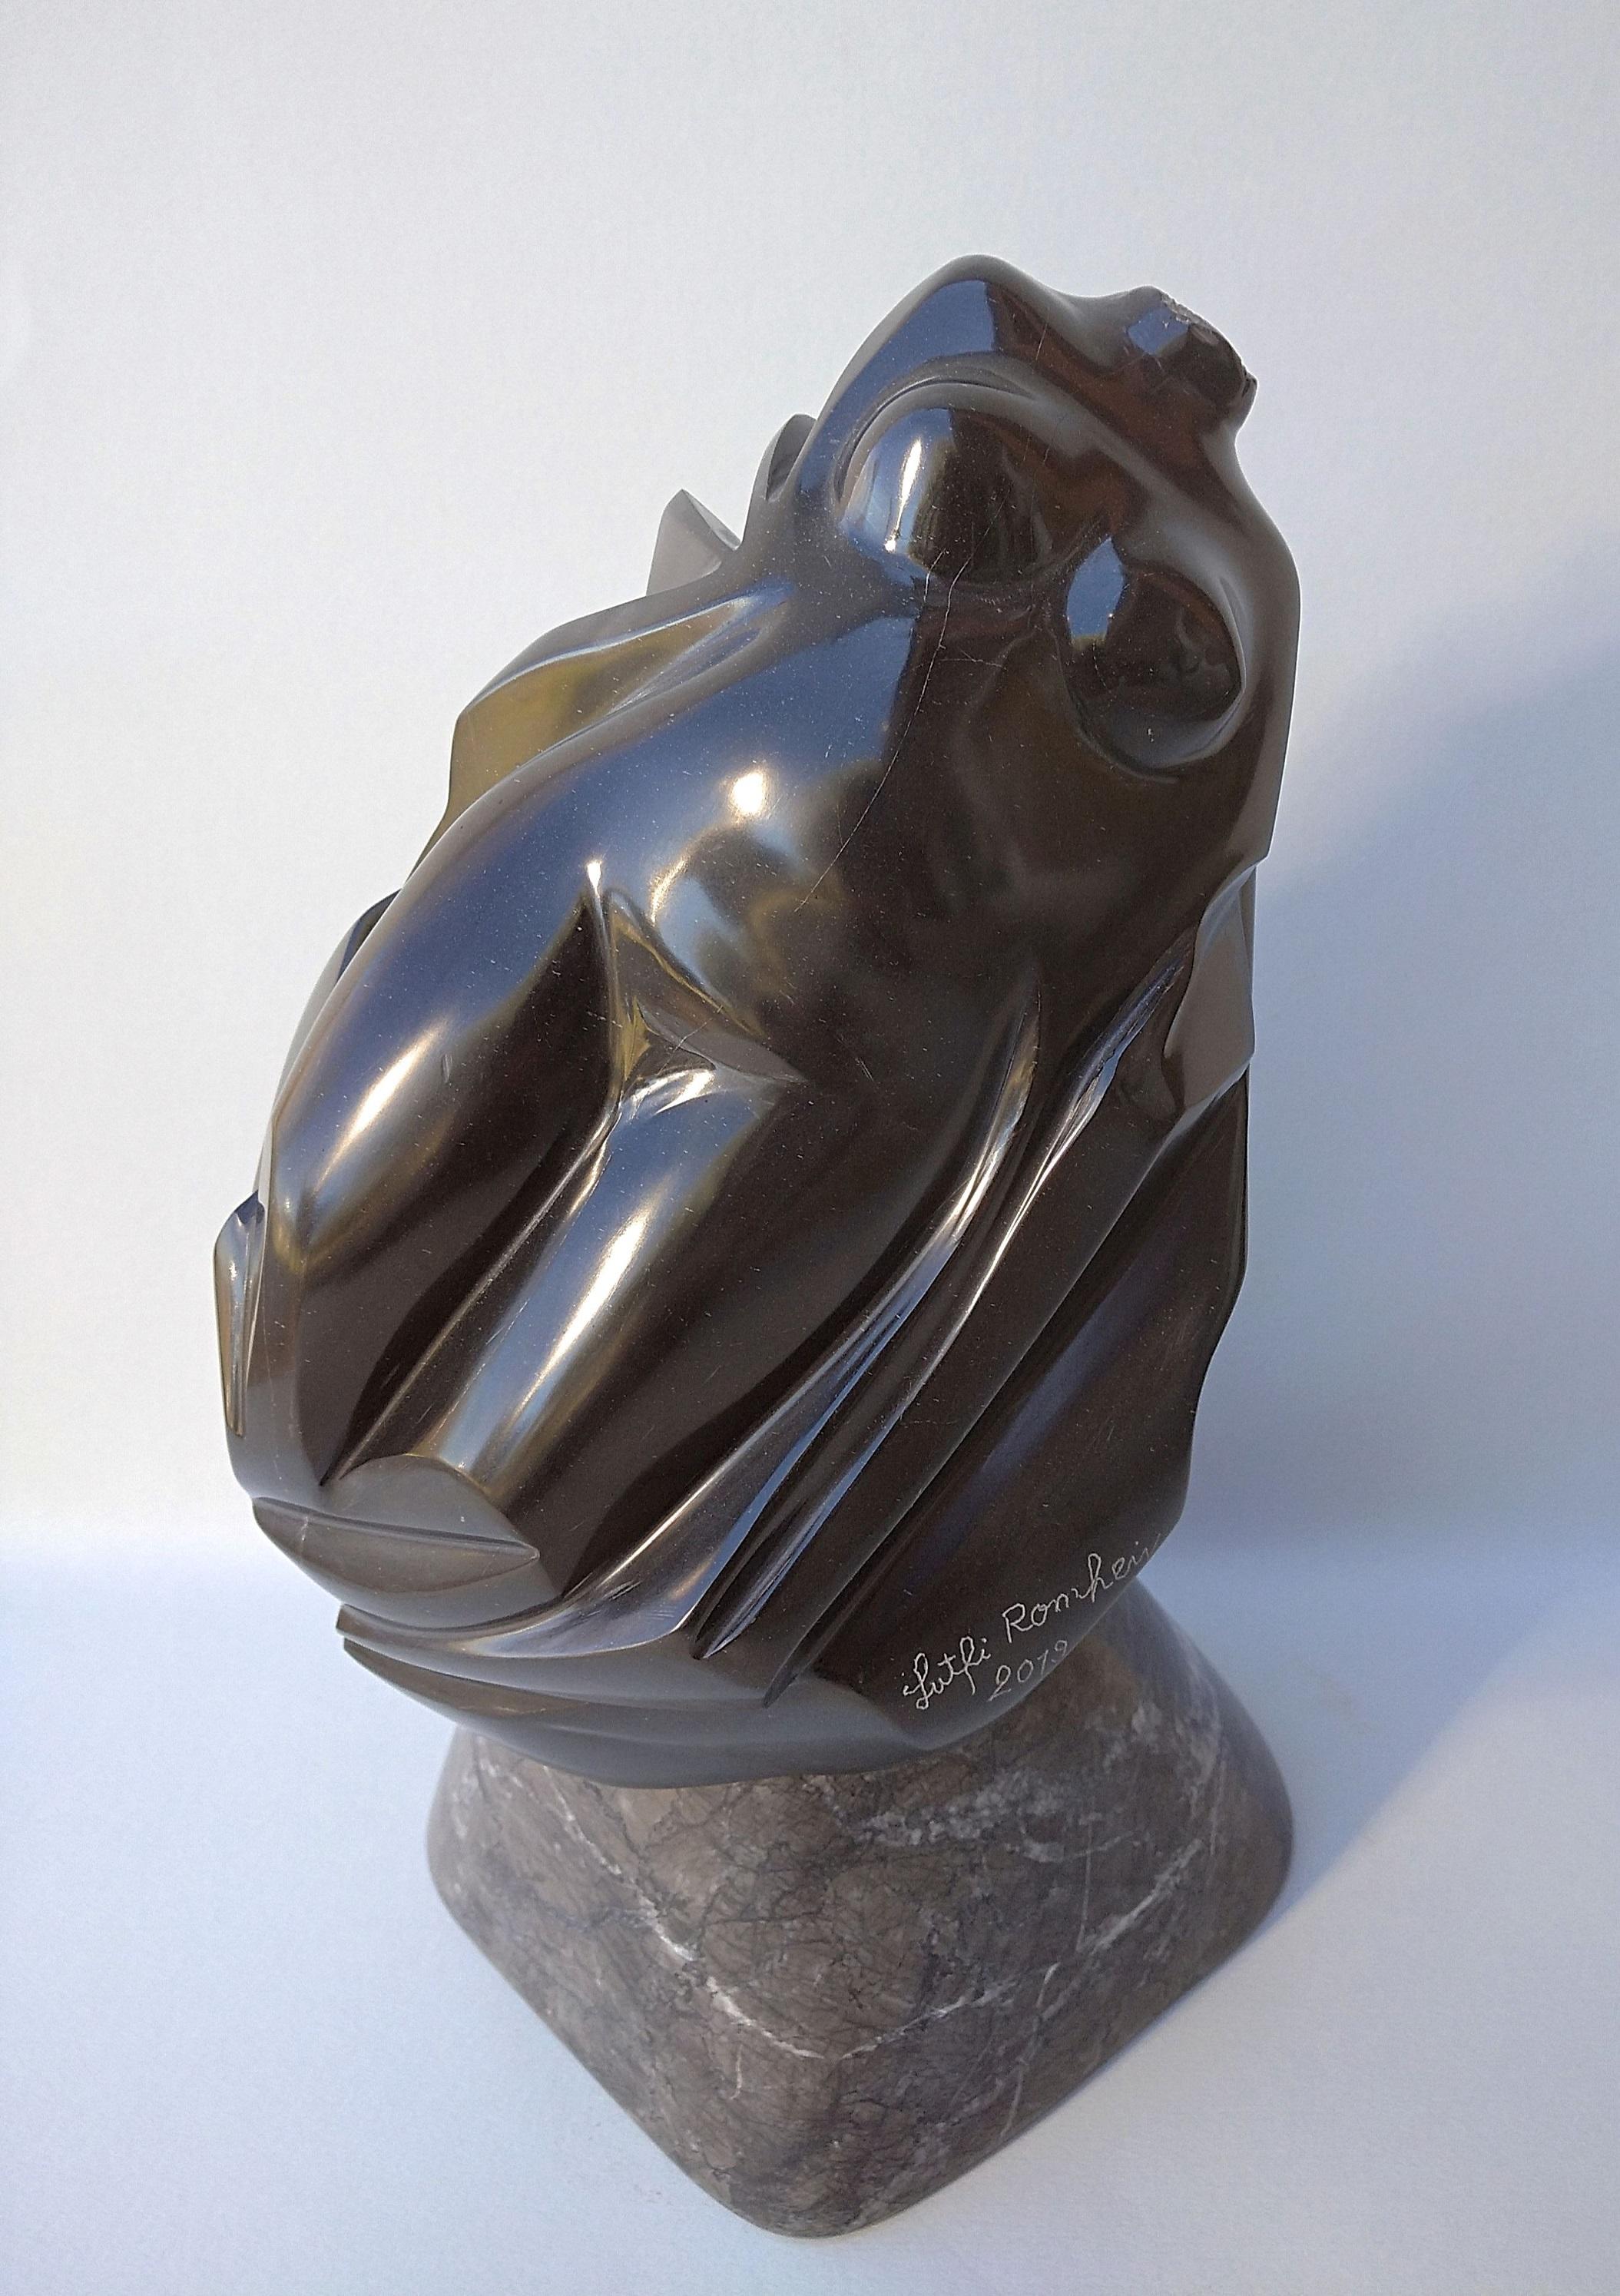 Diese figurative Skulptur von Lutfi Romhein zeigt eine weibliche Aktbüste aus schwarzem belgischem Marmor auf einem grauen Marmorsockel. Es hat eine sehr feine Maserung, die für einen wirklich weichen Griff sorgt. Der hochglanzpolierte schwarze